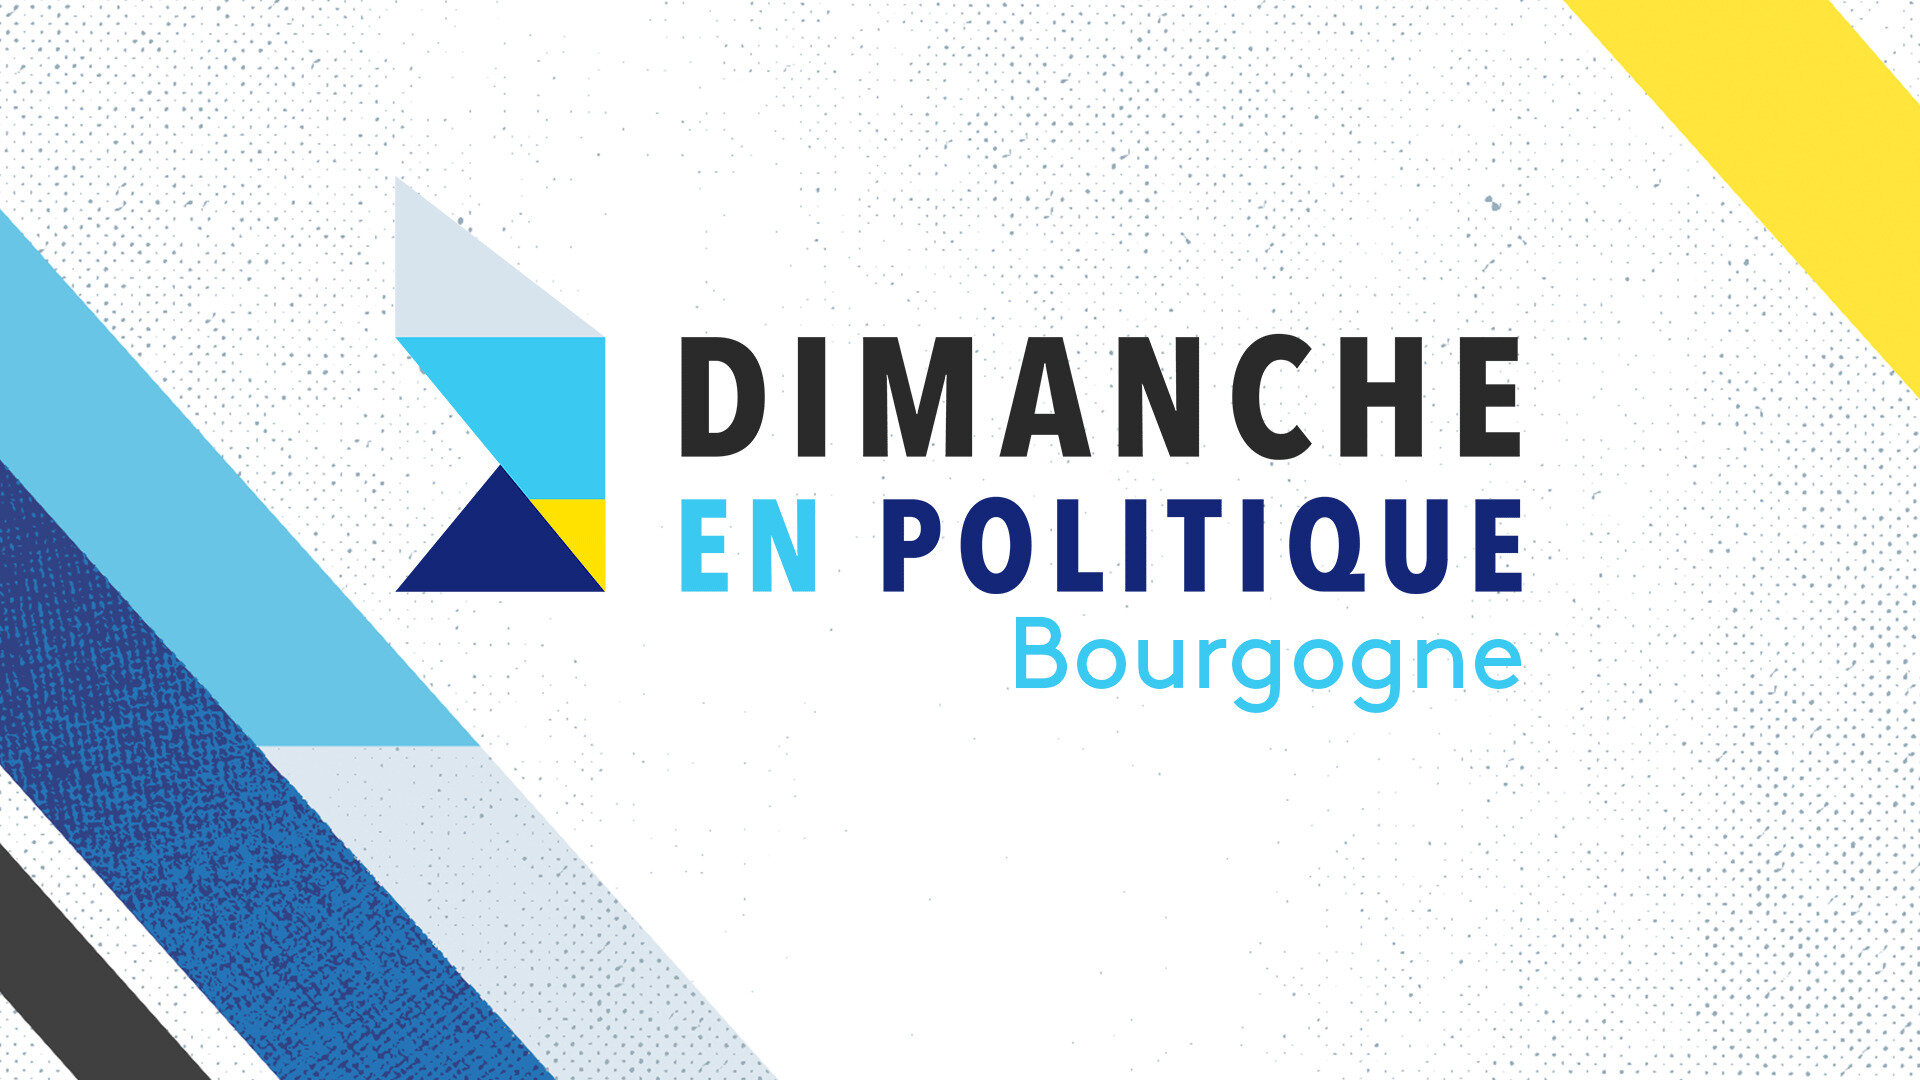 Dimanche en politique - Bourgogne : Le vin et le réchauffement climatique